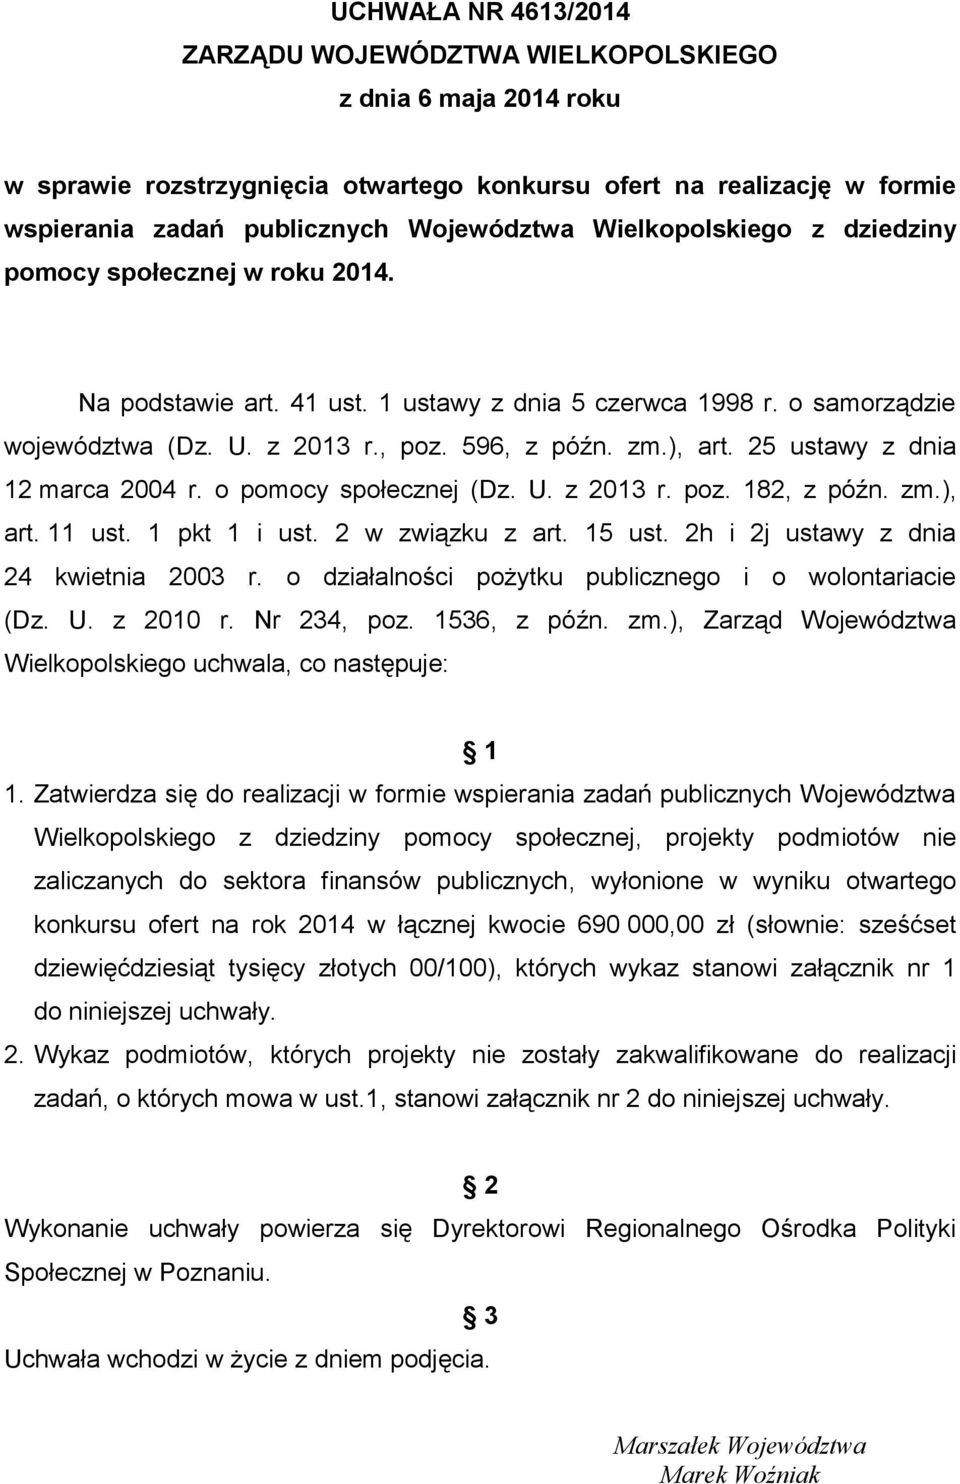 25 ustawy z dnia 12 marca 2004 r. o pomocy społecznej (Dz. U. z 2013 r. poz. 182, z późn. zm.), art. 11 ust. 1 pkt 1 i ust. 2 w związku z art. 15 ust. 2h i 2j ustawy z dnia 24 kwietnia 2003 r.